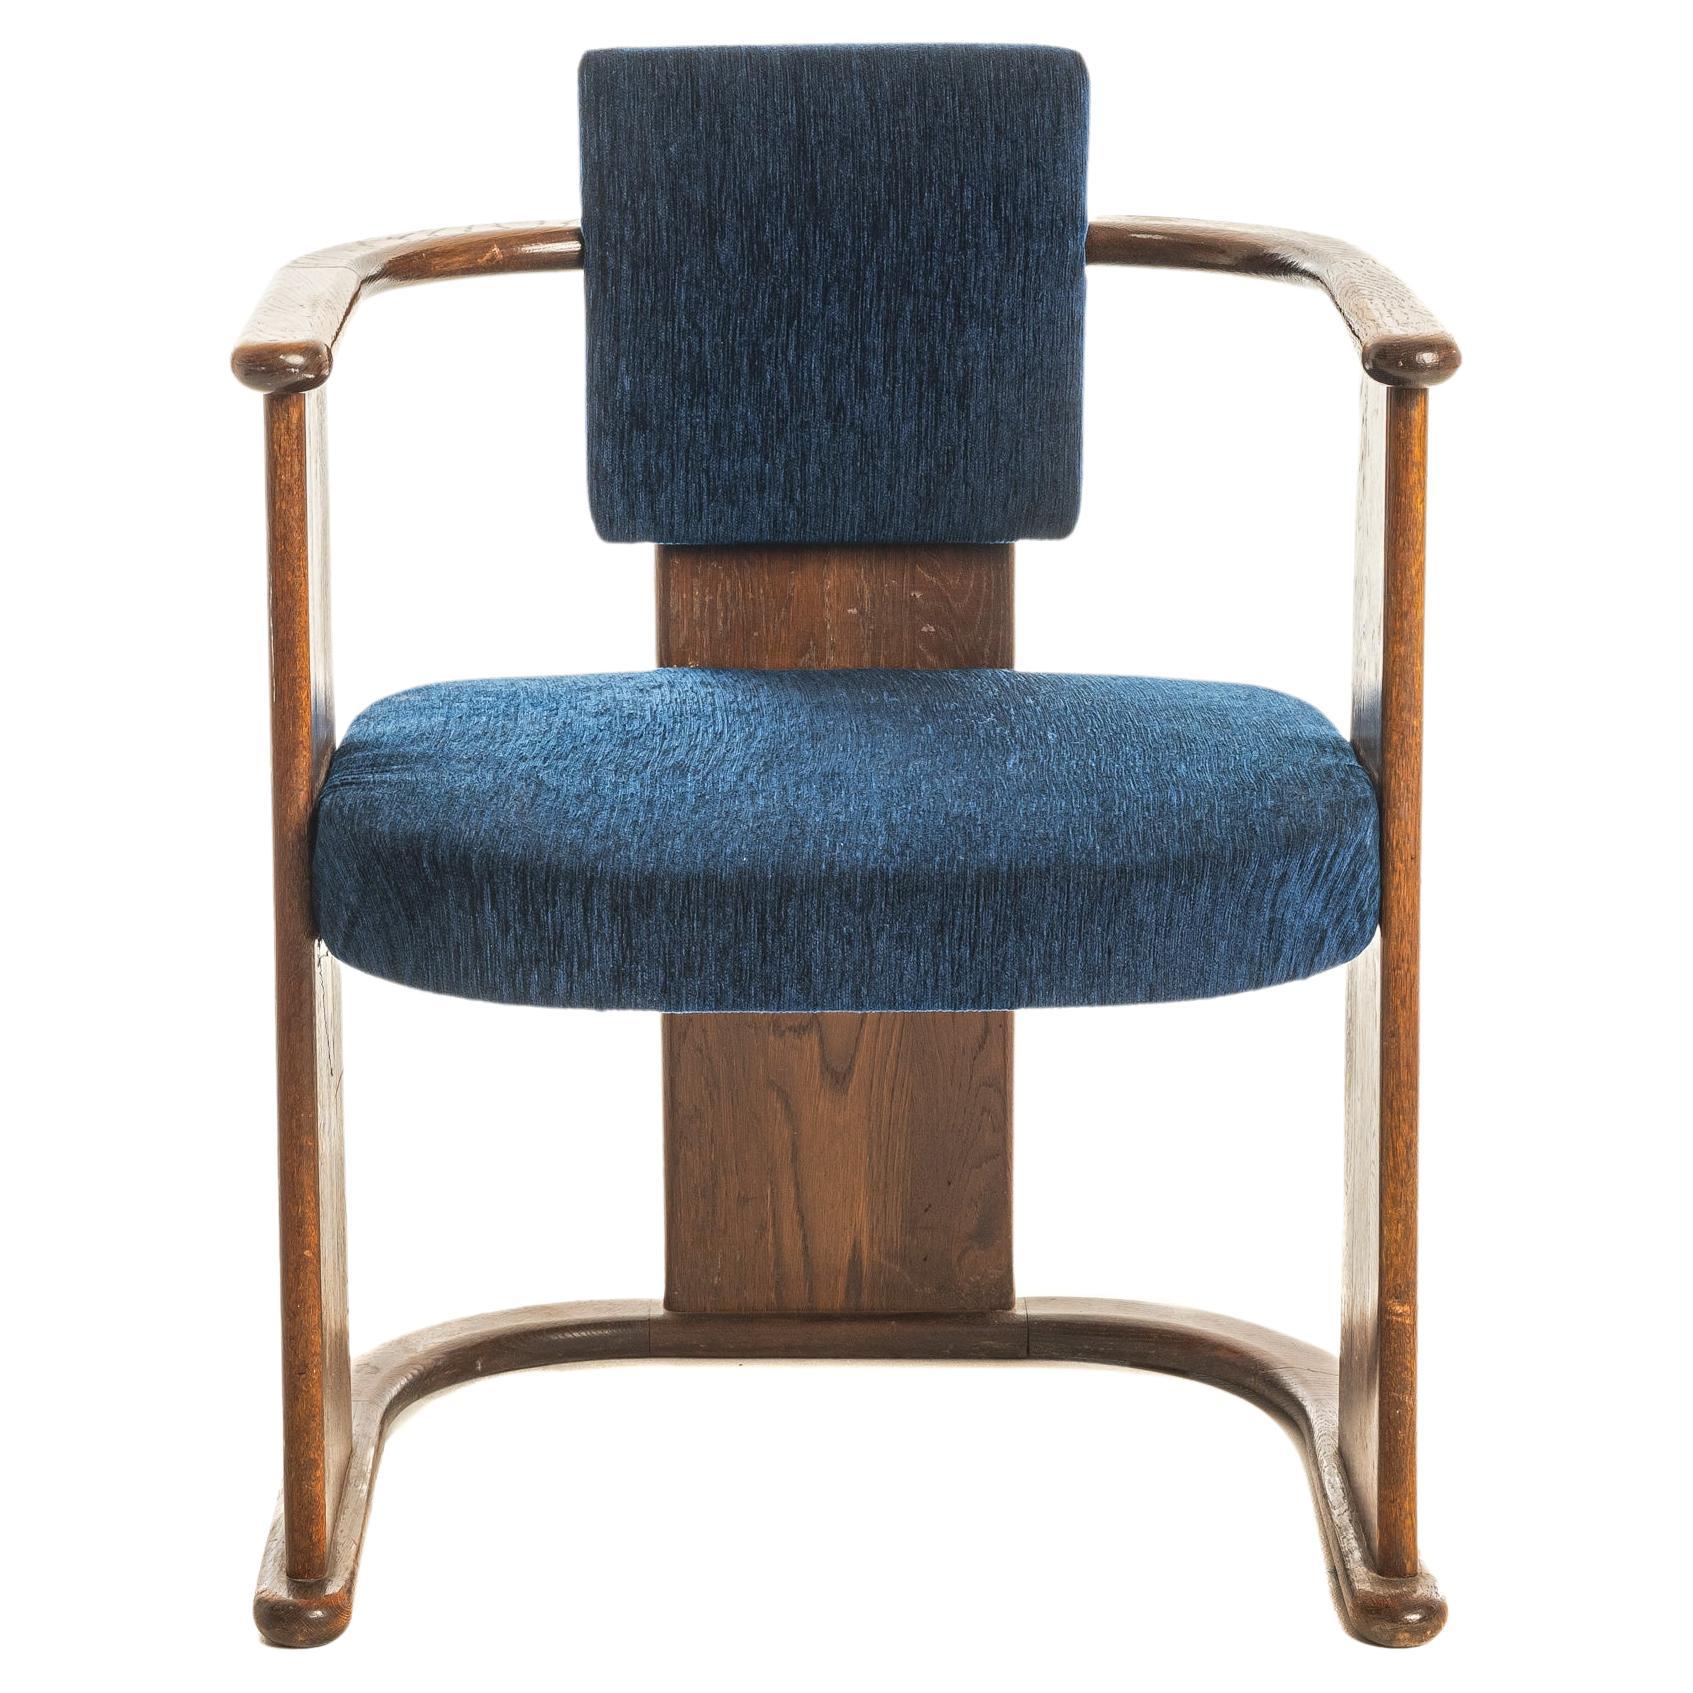 1900 oak frame chair , art nouveau style For Sale